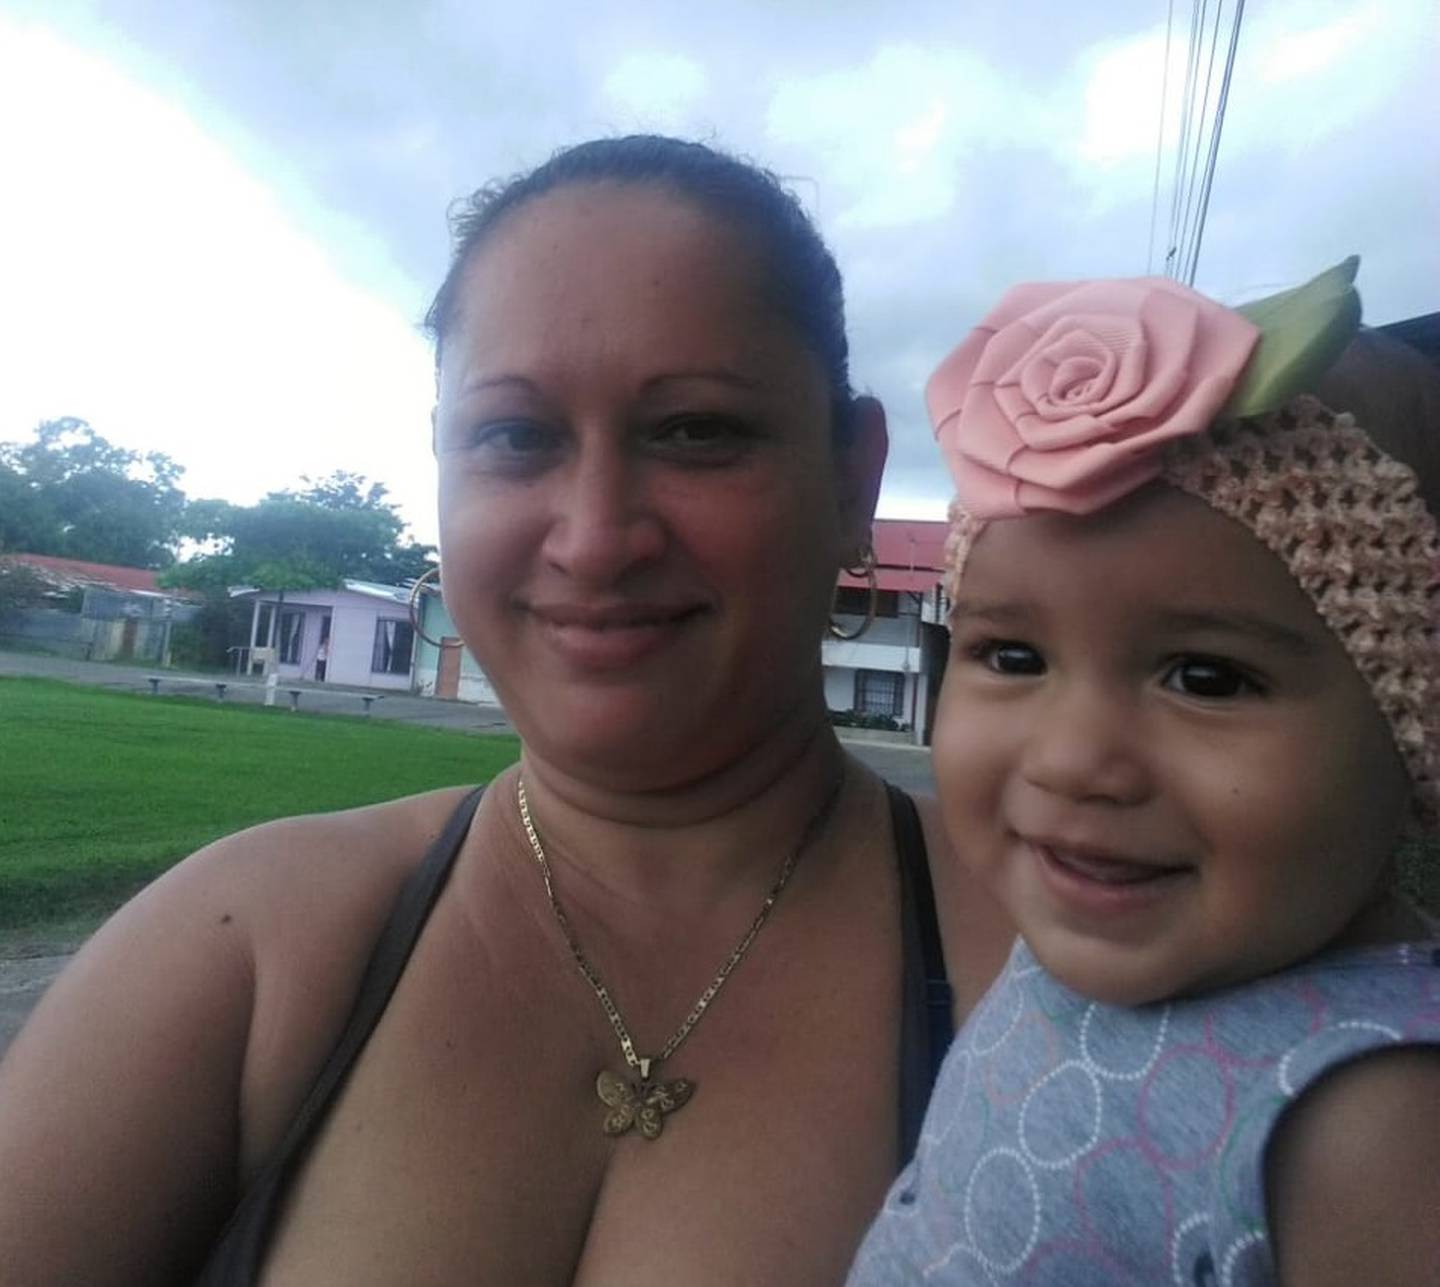 Marlene Picado Monge vívía enamorada de su nieta Emma, de 9 meses. Foto Kimberly Brenes.